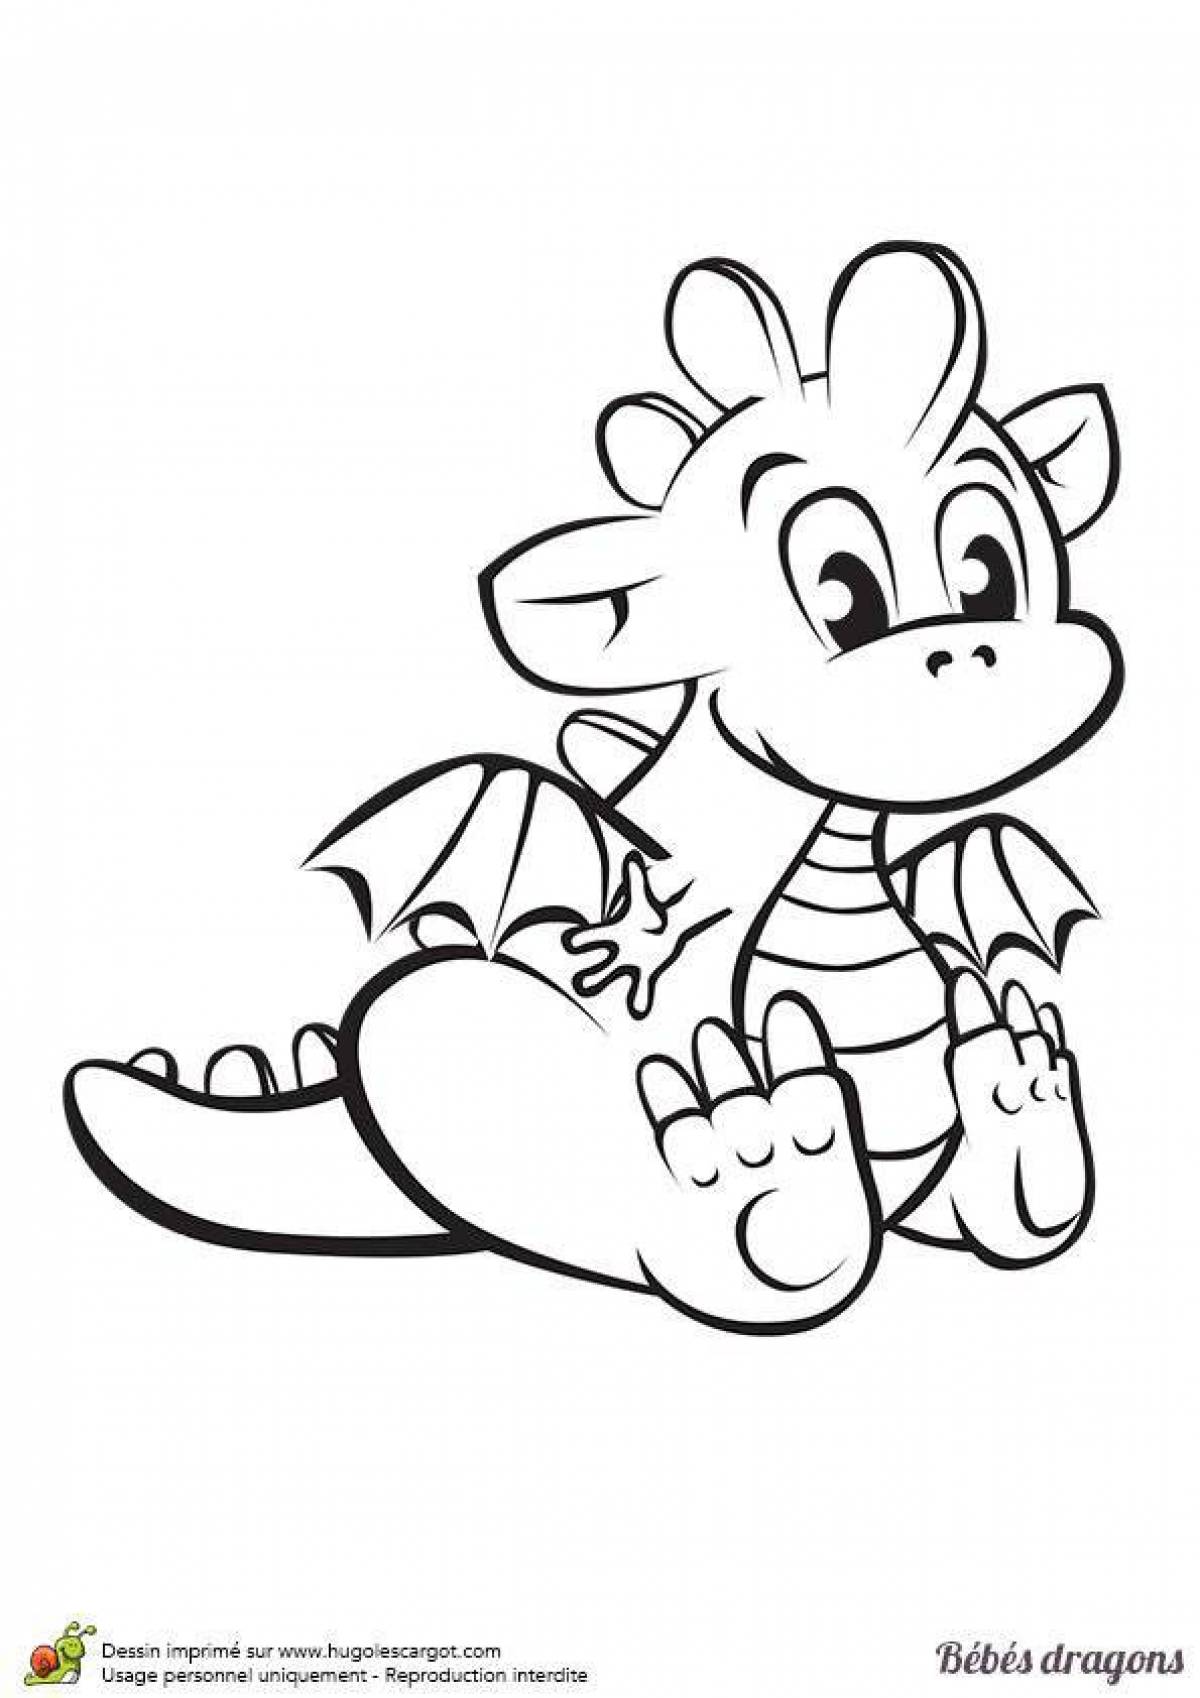 Generous dragon coloring